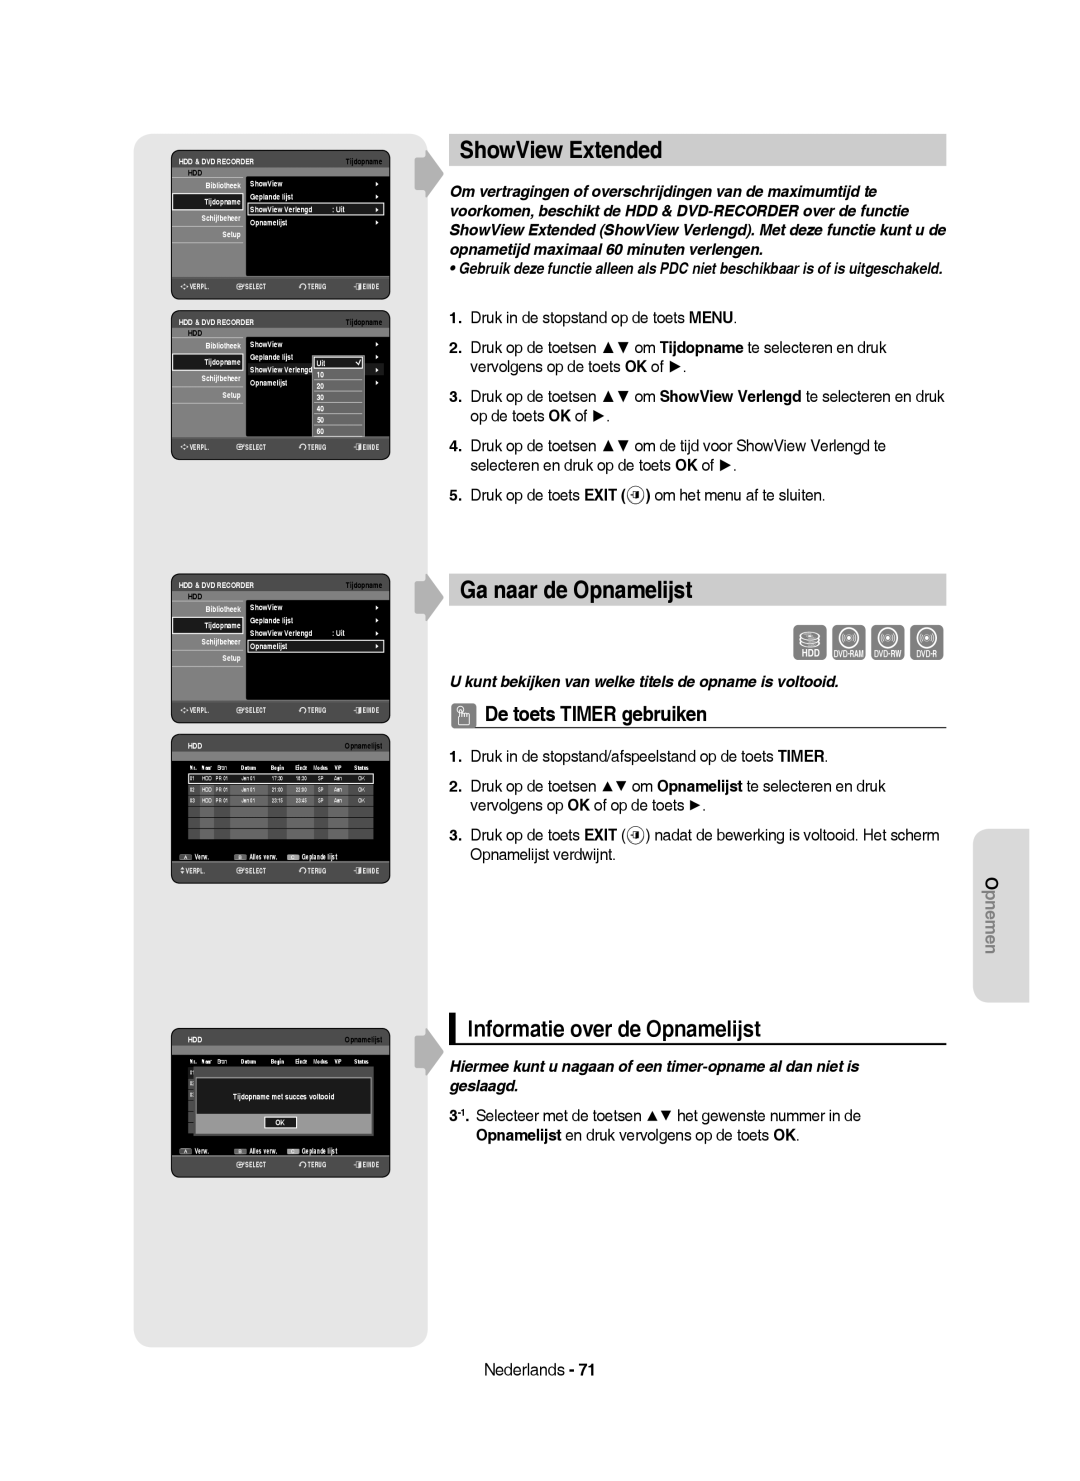 Samsung DVD-HR750/XEB manual Ga naar de Opnamelijst, Informatie over de Opnamelijst, Bibliotheek ShowView, Uit Schijfbeheer 